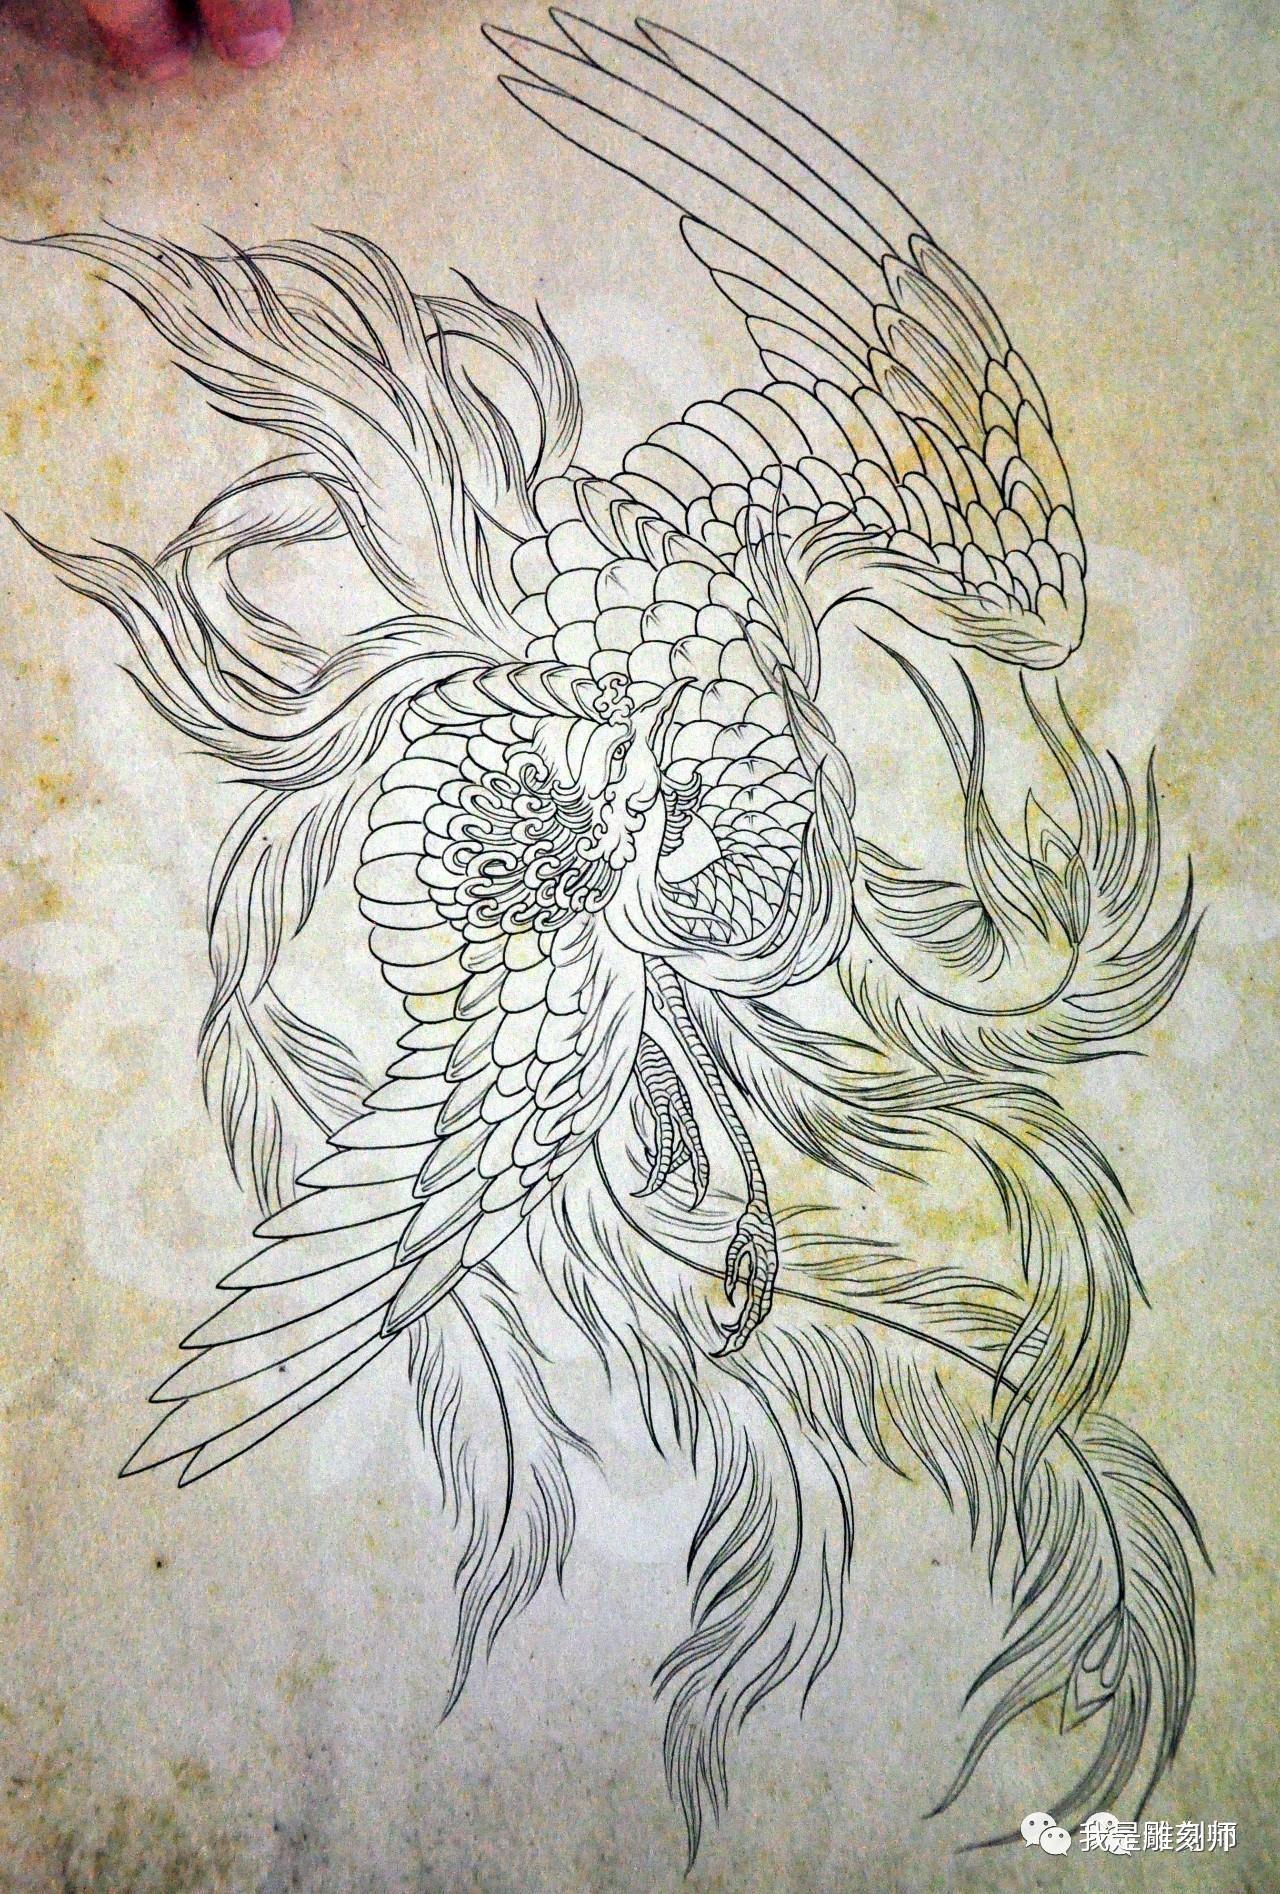 我是雕刻师:中式传统纹身素描雕刻手稿